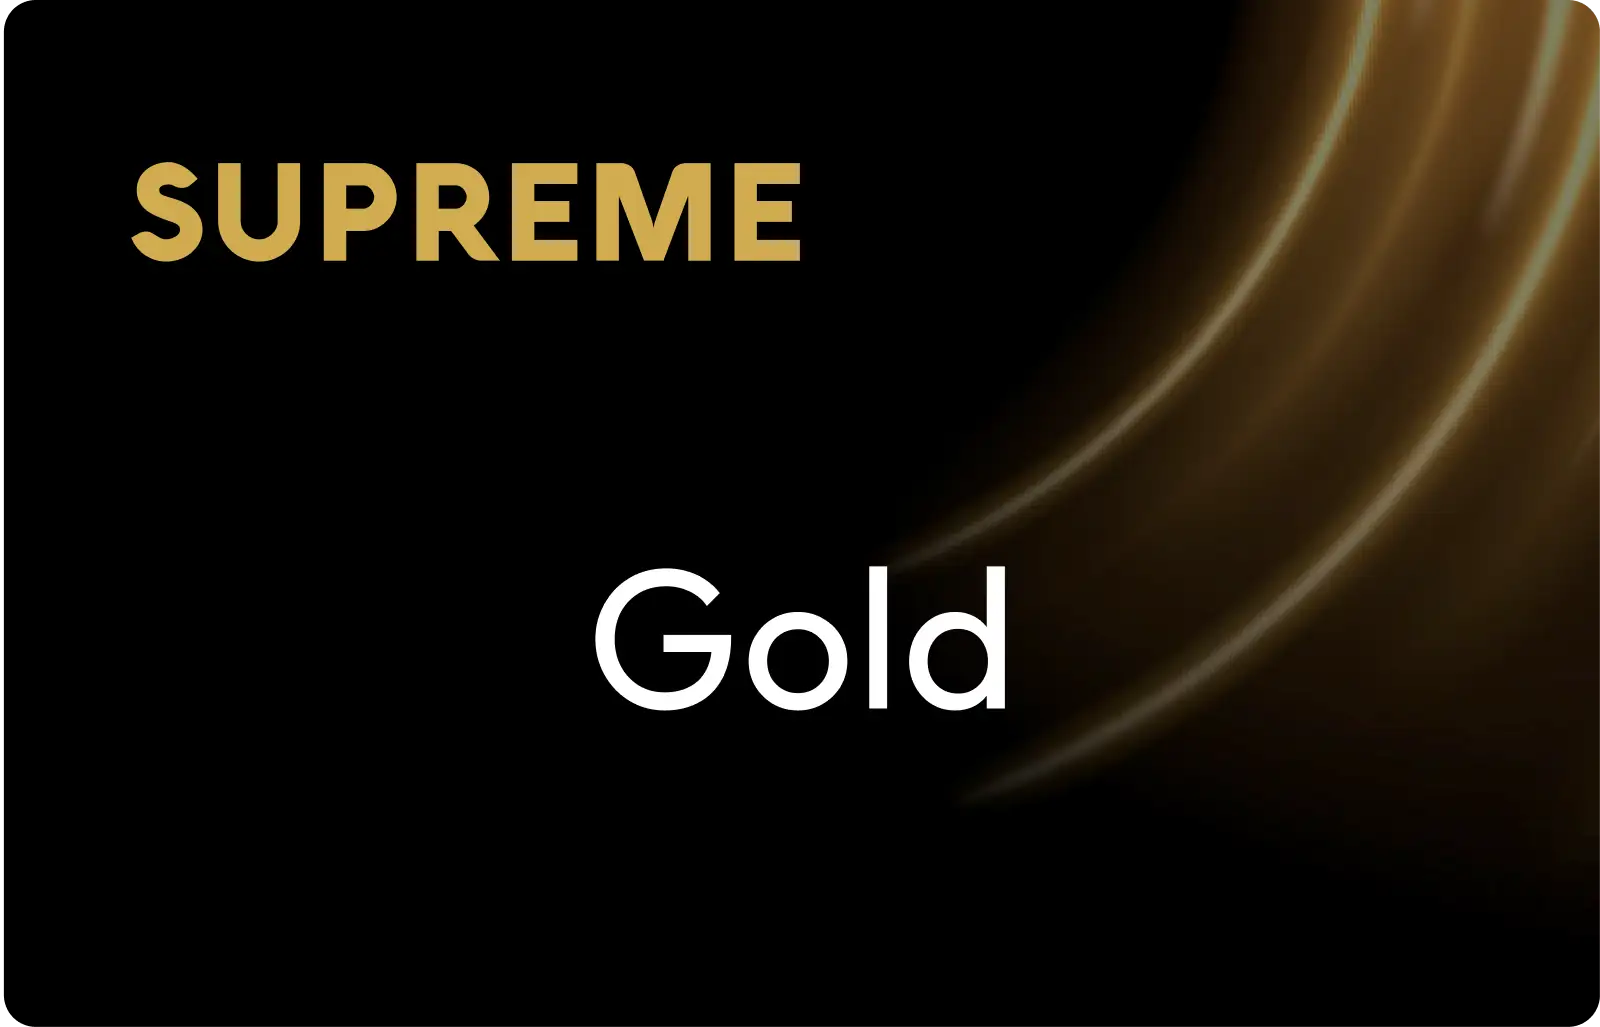 SUPREME Gold 客戶